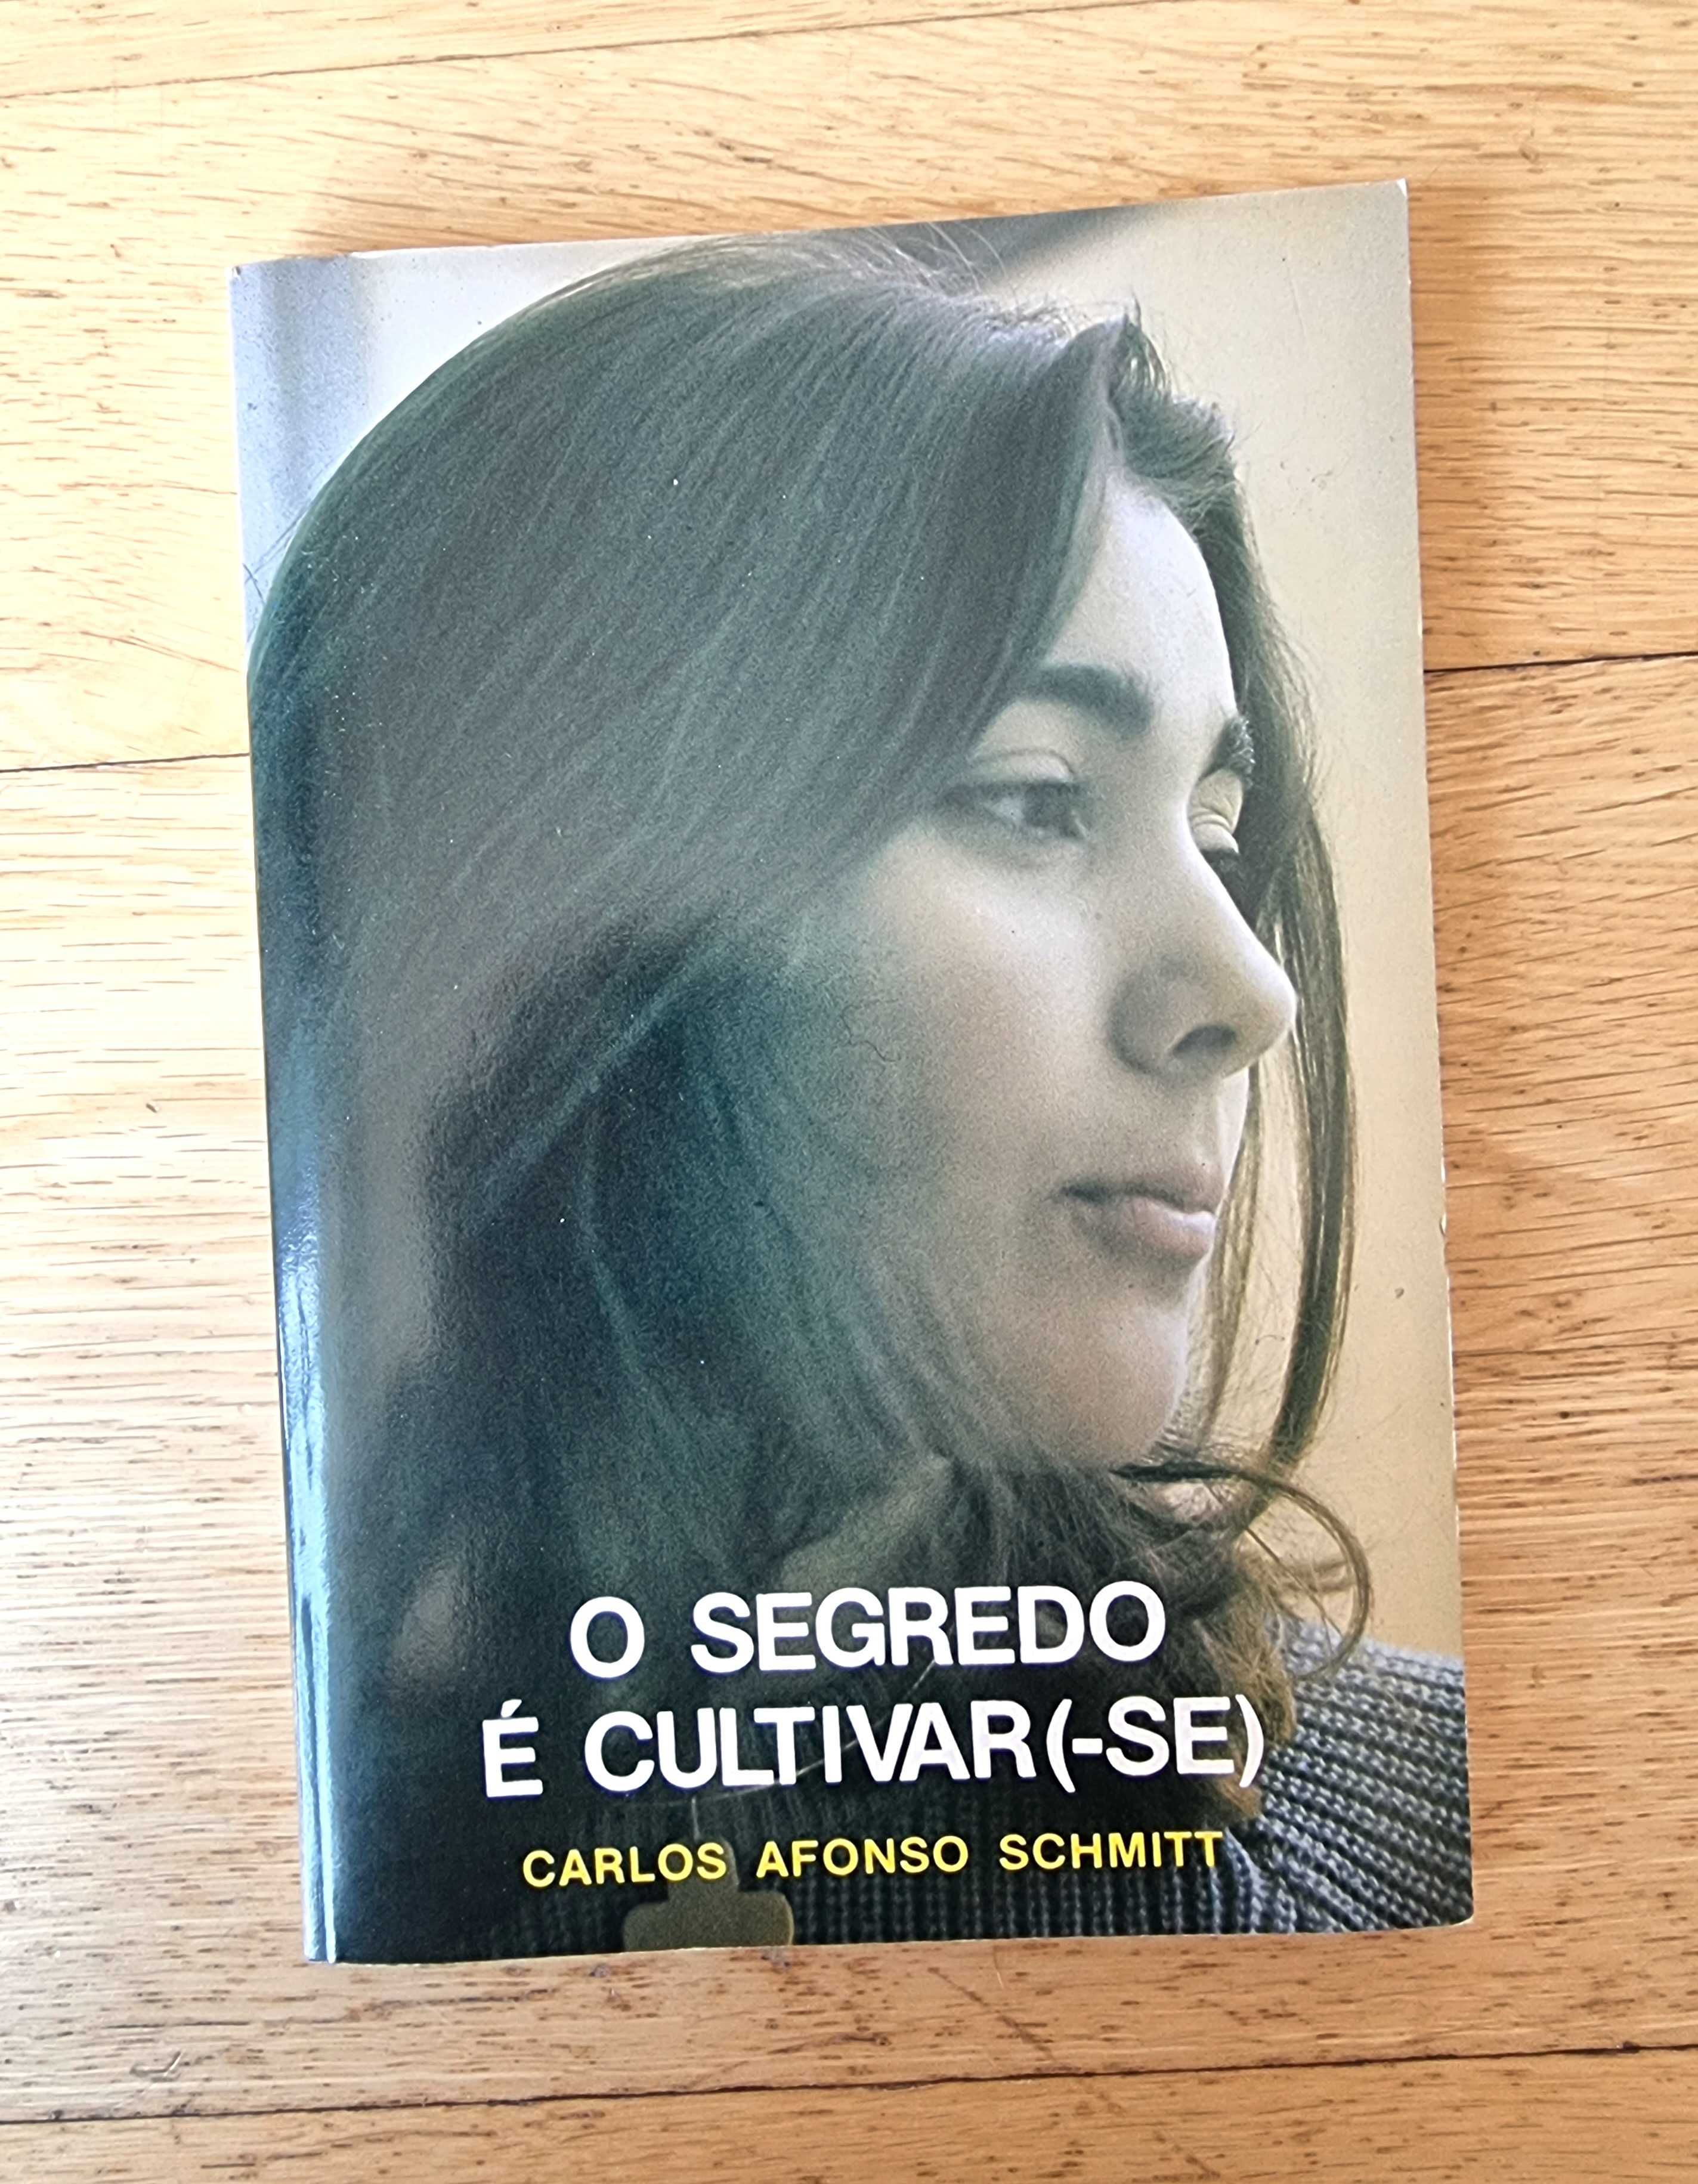 Livro "O Segredo é Cultivar(-se)" de Carlos Afonso Schmitt